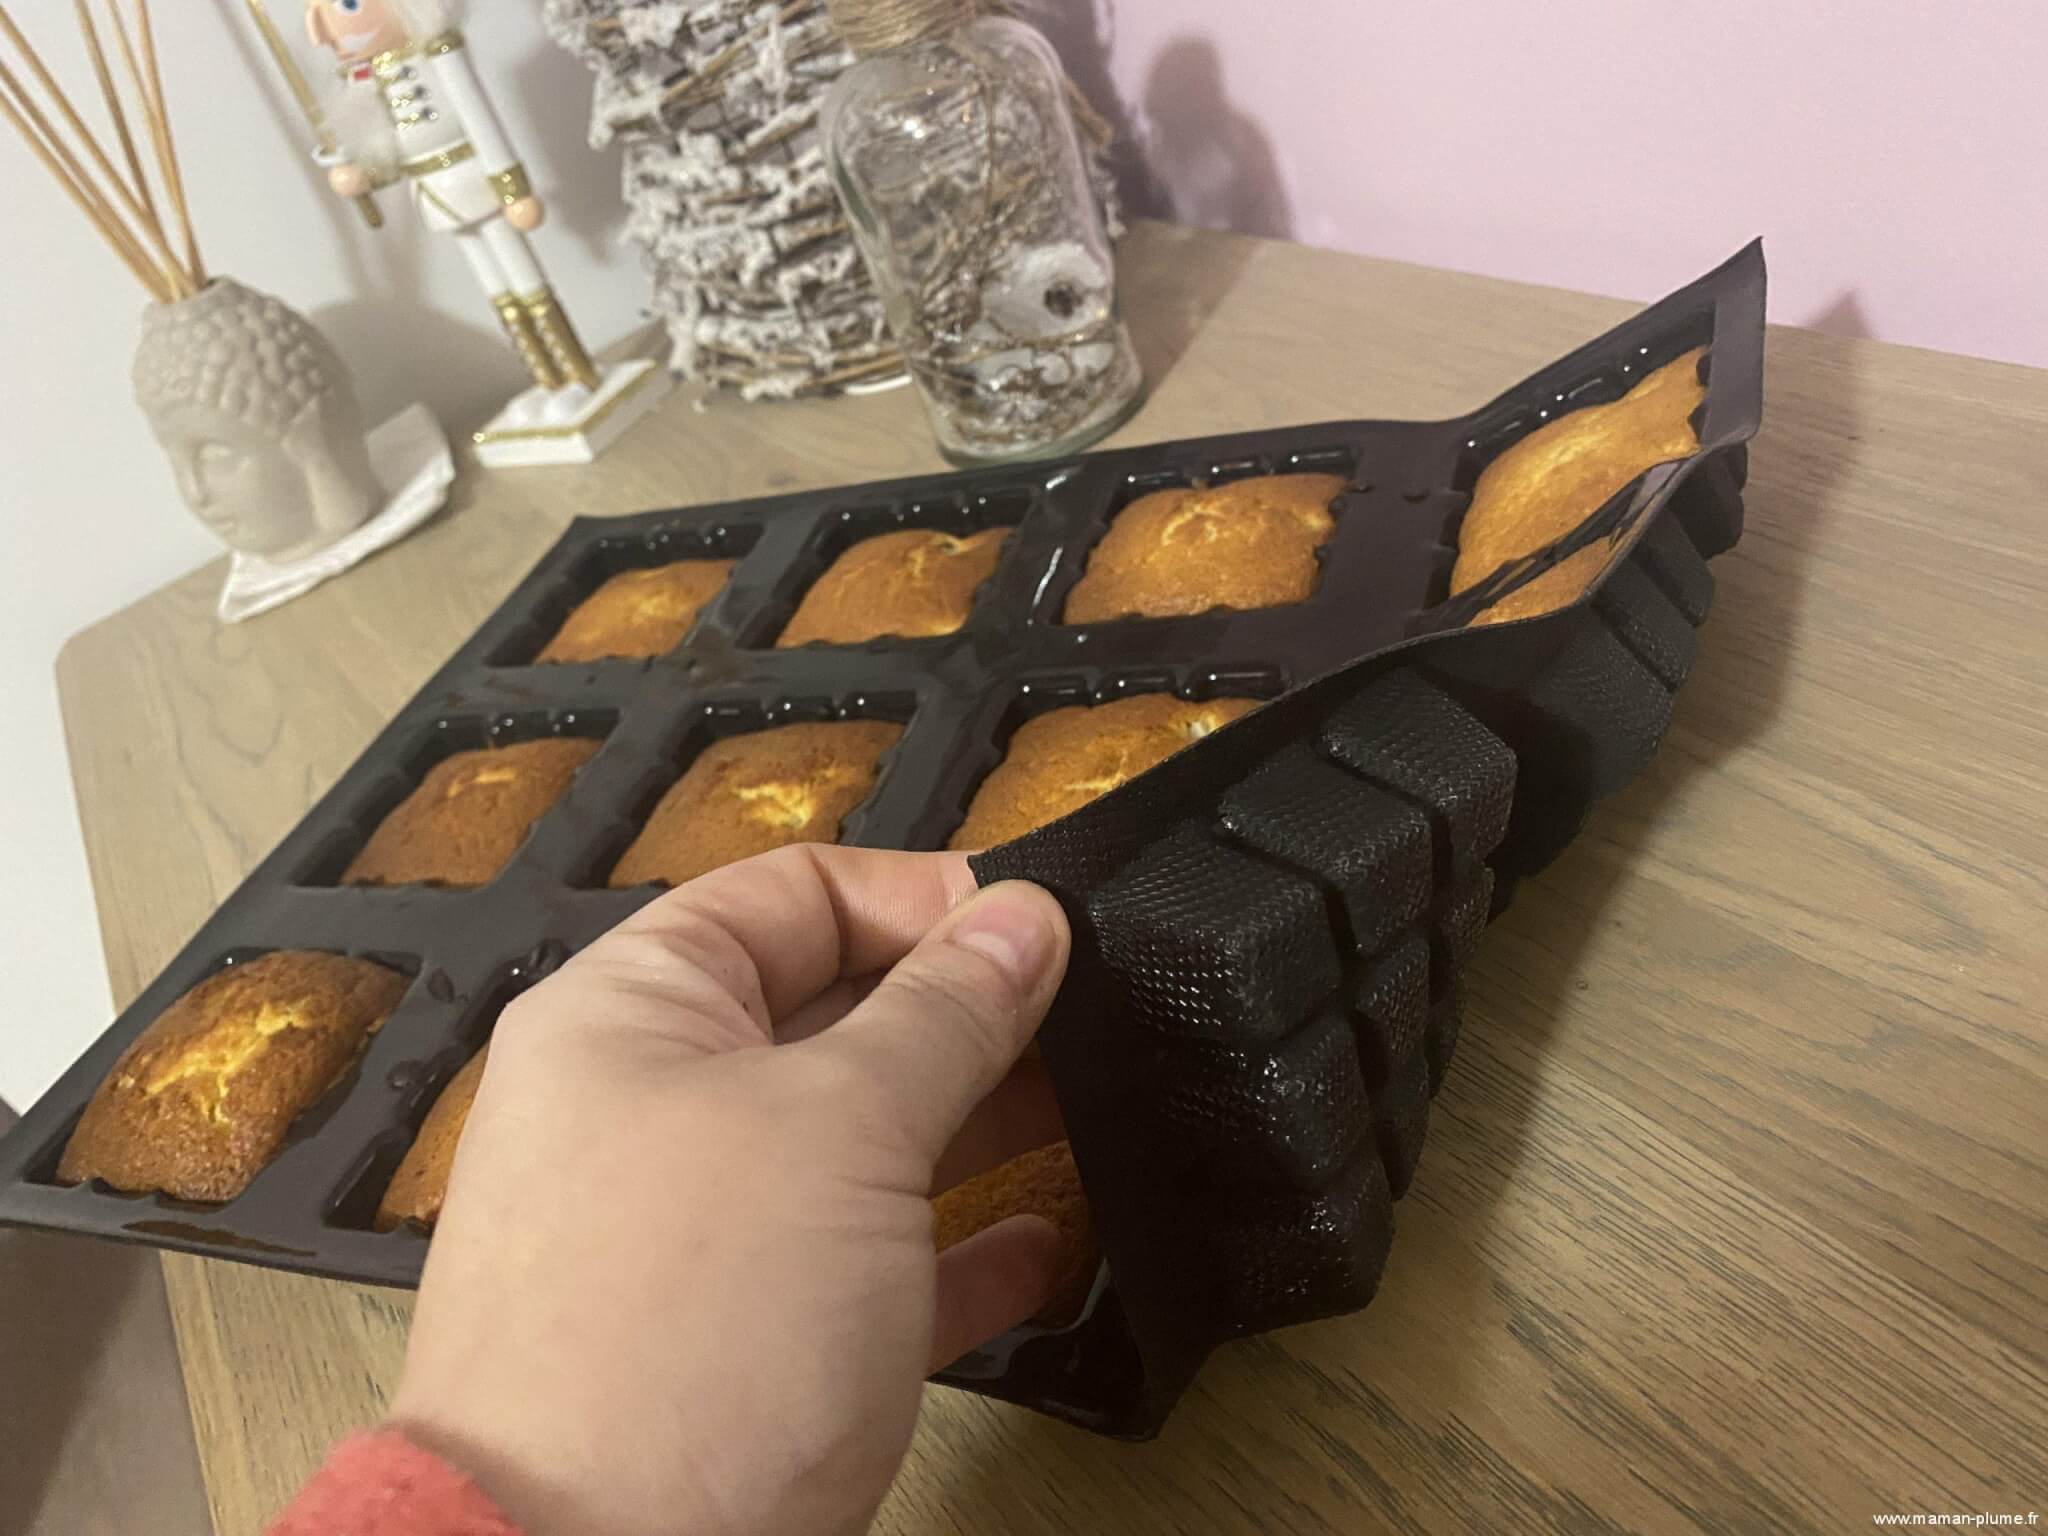 Minis tablettes amandes pomme chocolat !